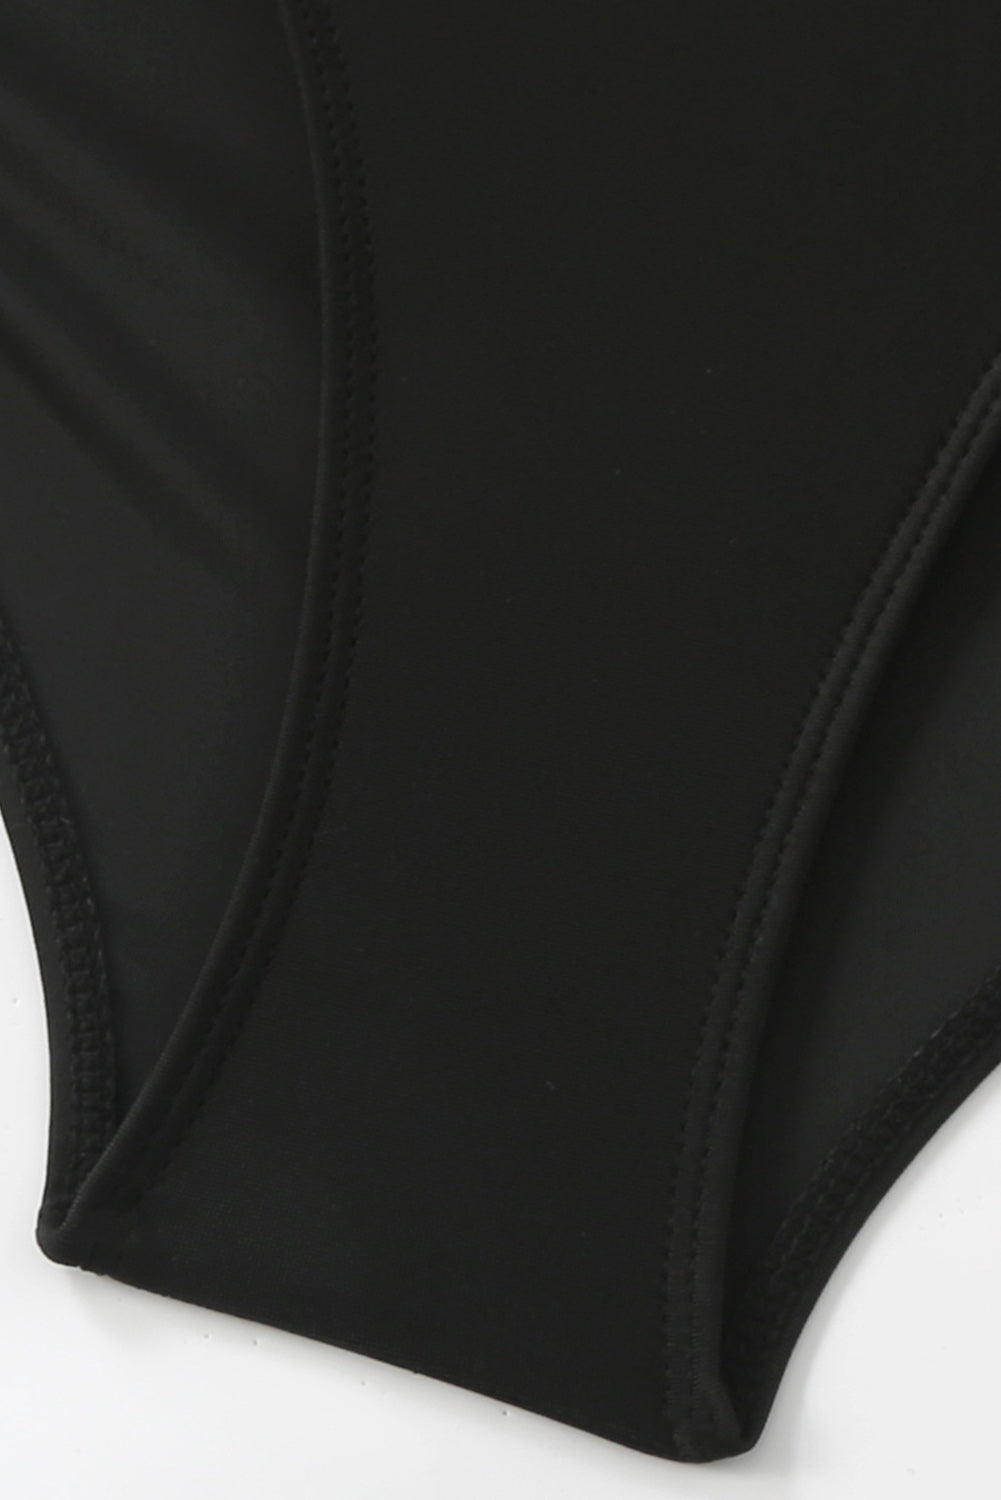 Schwarzer Monokini-Badeanzug mit gerafftem Netzausschnitt und Kordelzug